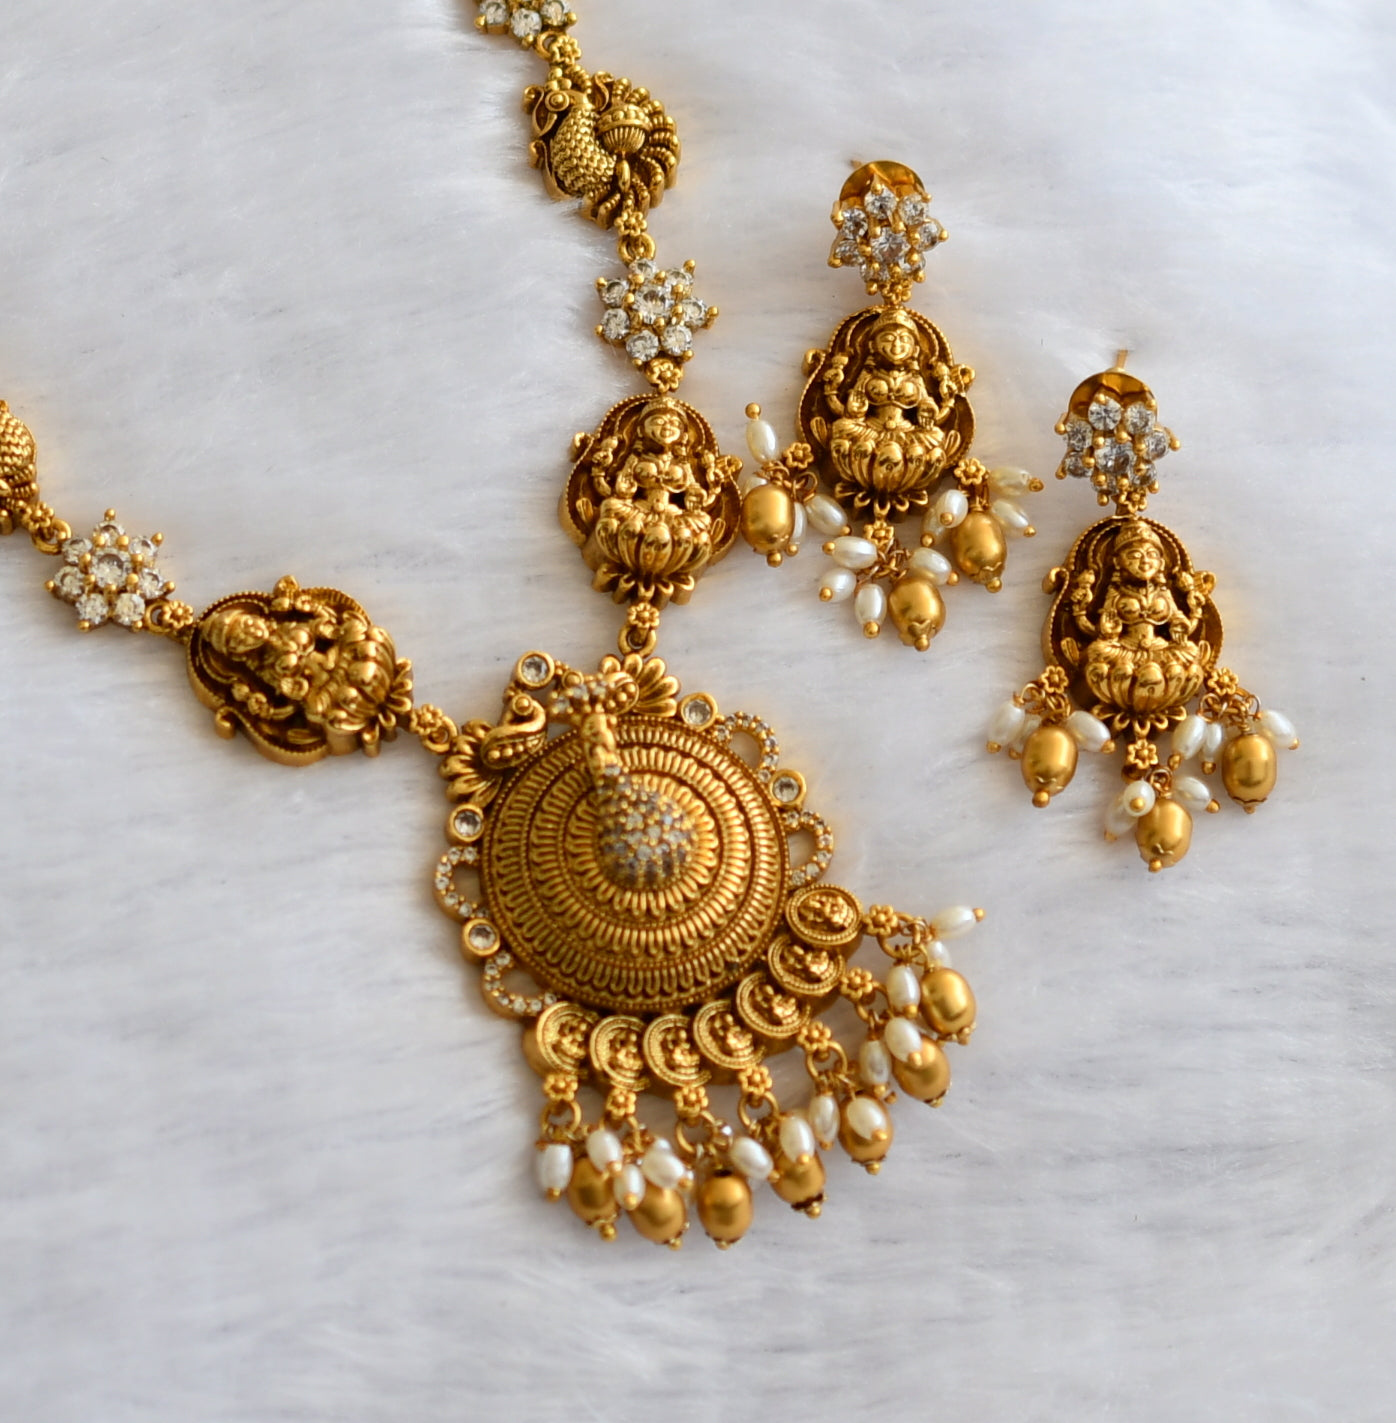 Antique gold tone cz white lakshmi peacock flower necklace set dj-46338